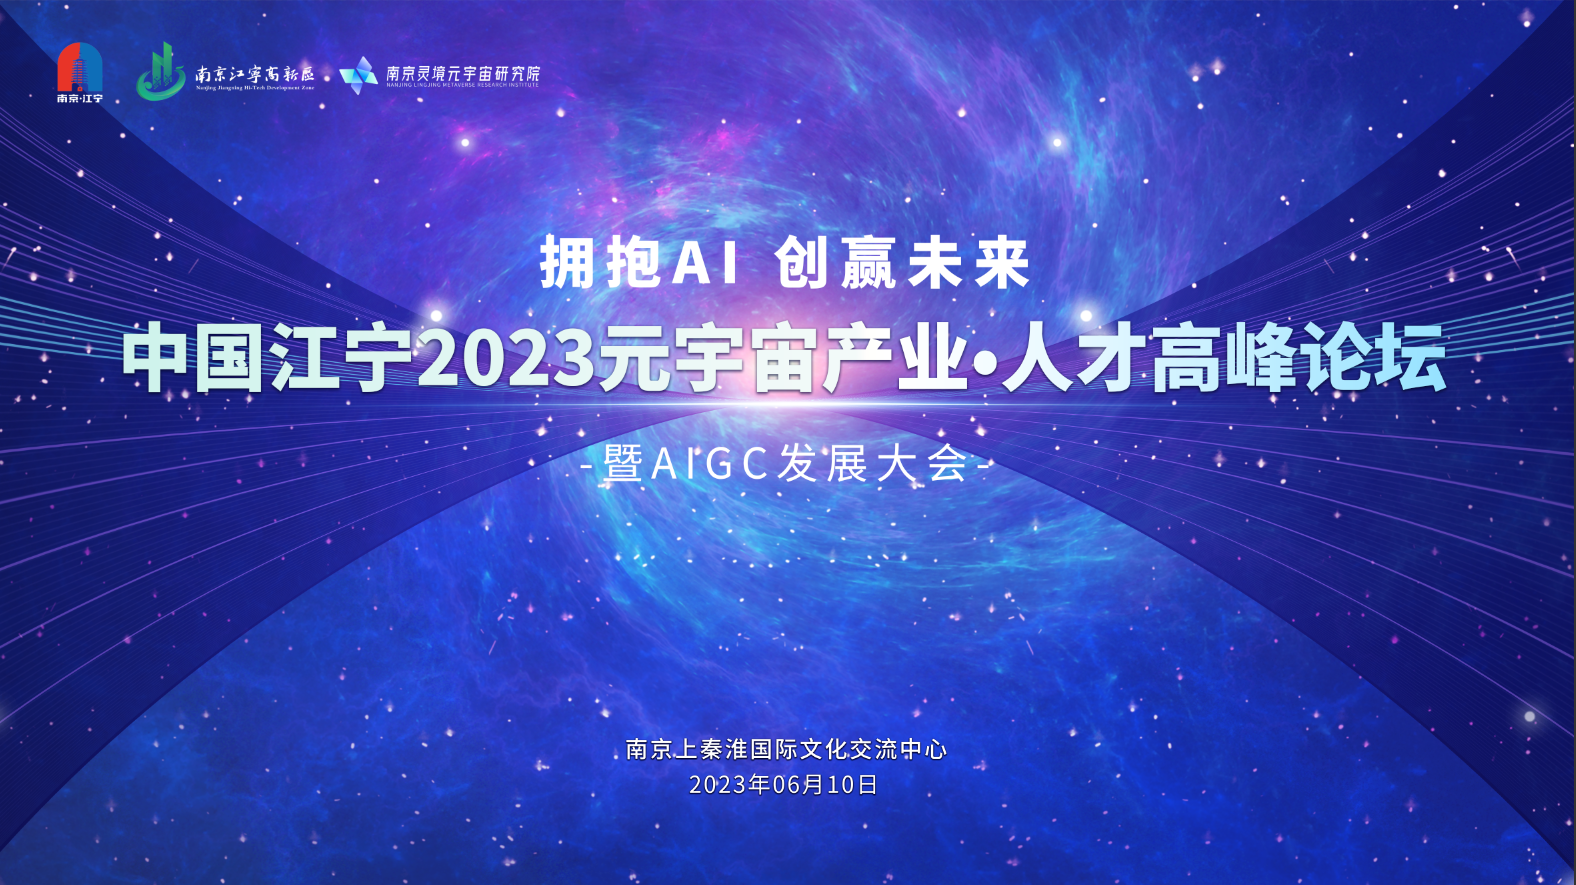 6月10日中国江宁2023元宇宙产业·人才高峰论坛暨AIGC发展大会将在南京举行